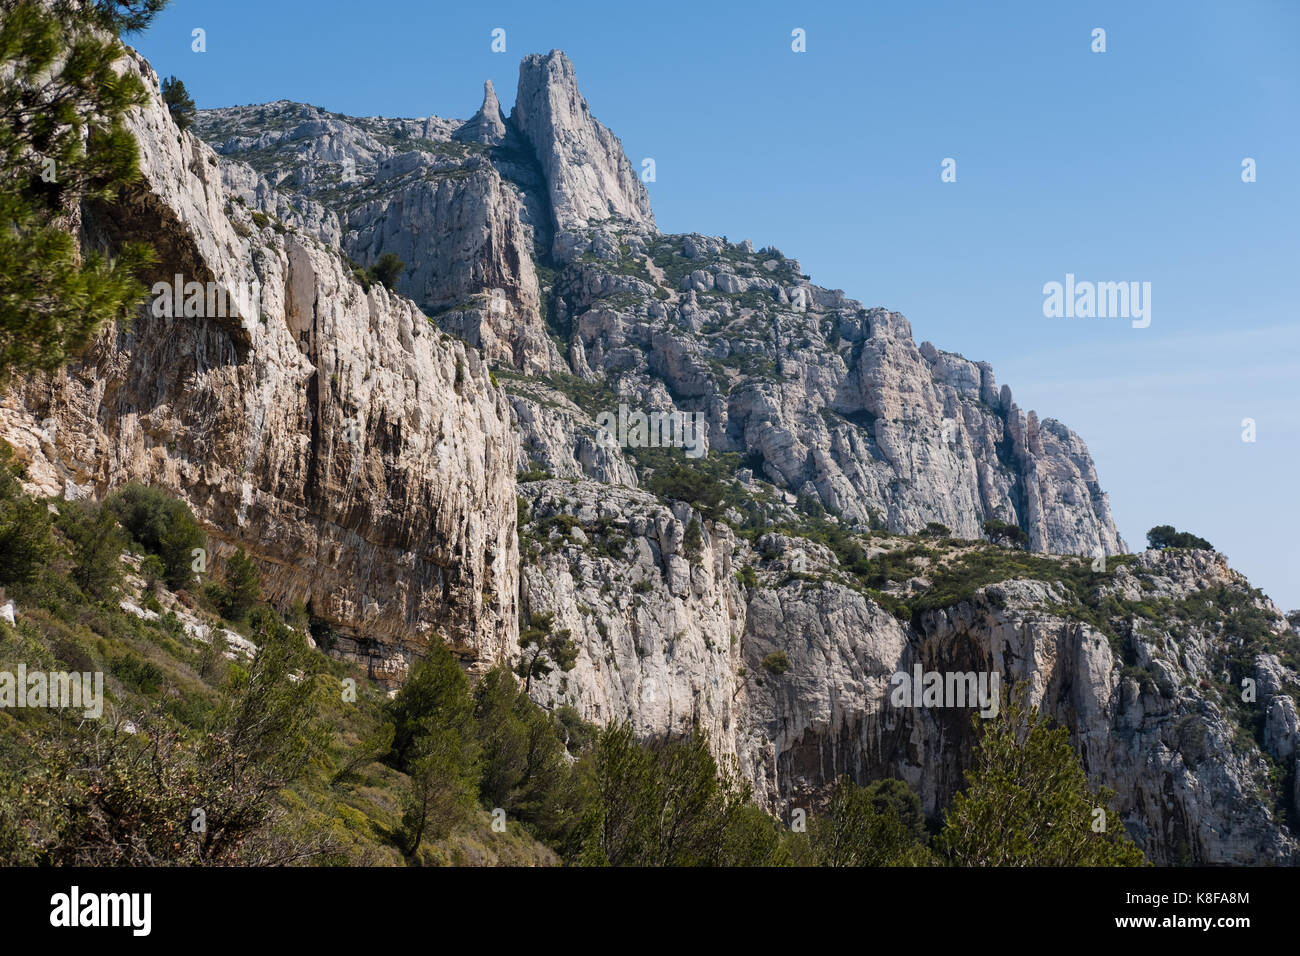 La Candelle rock Calanque de Sugiton,Calanques National Park, southern France Stock Photo